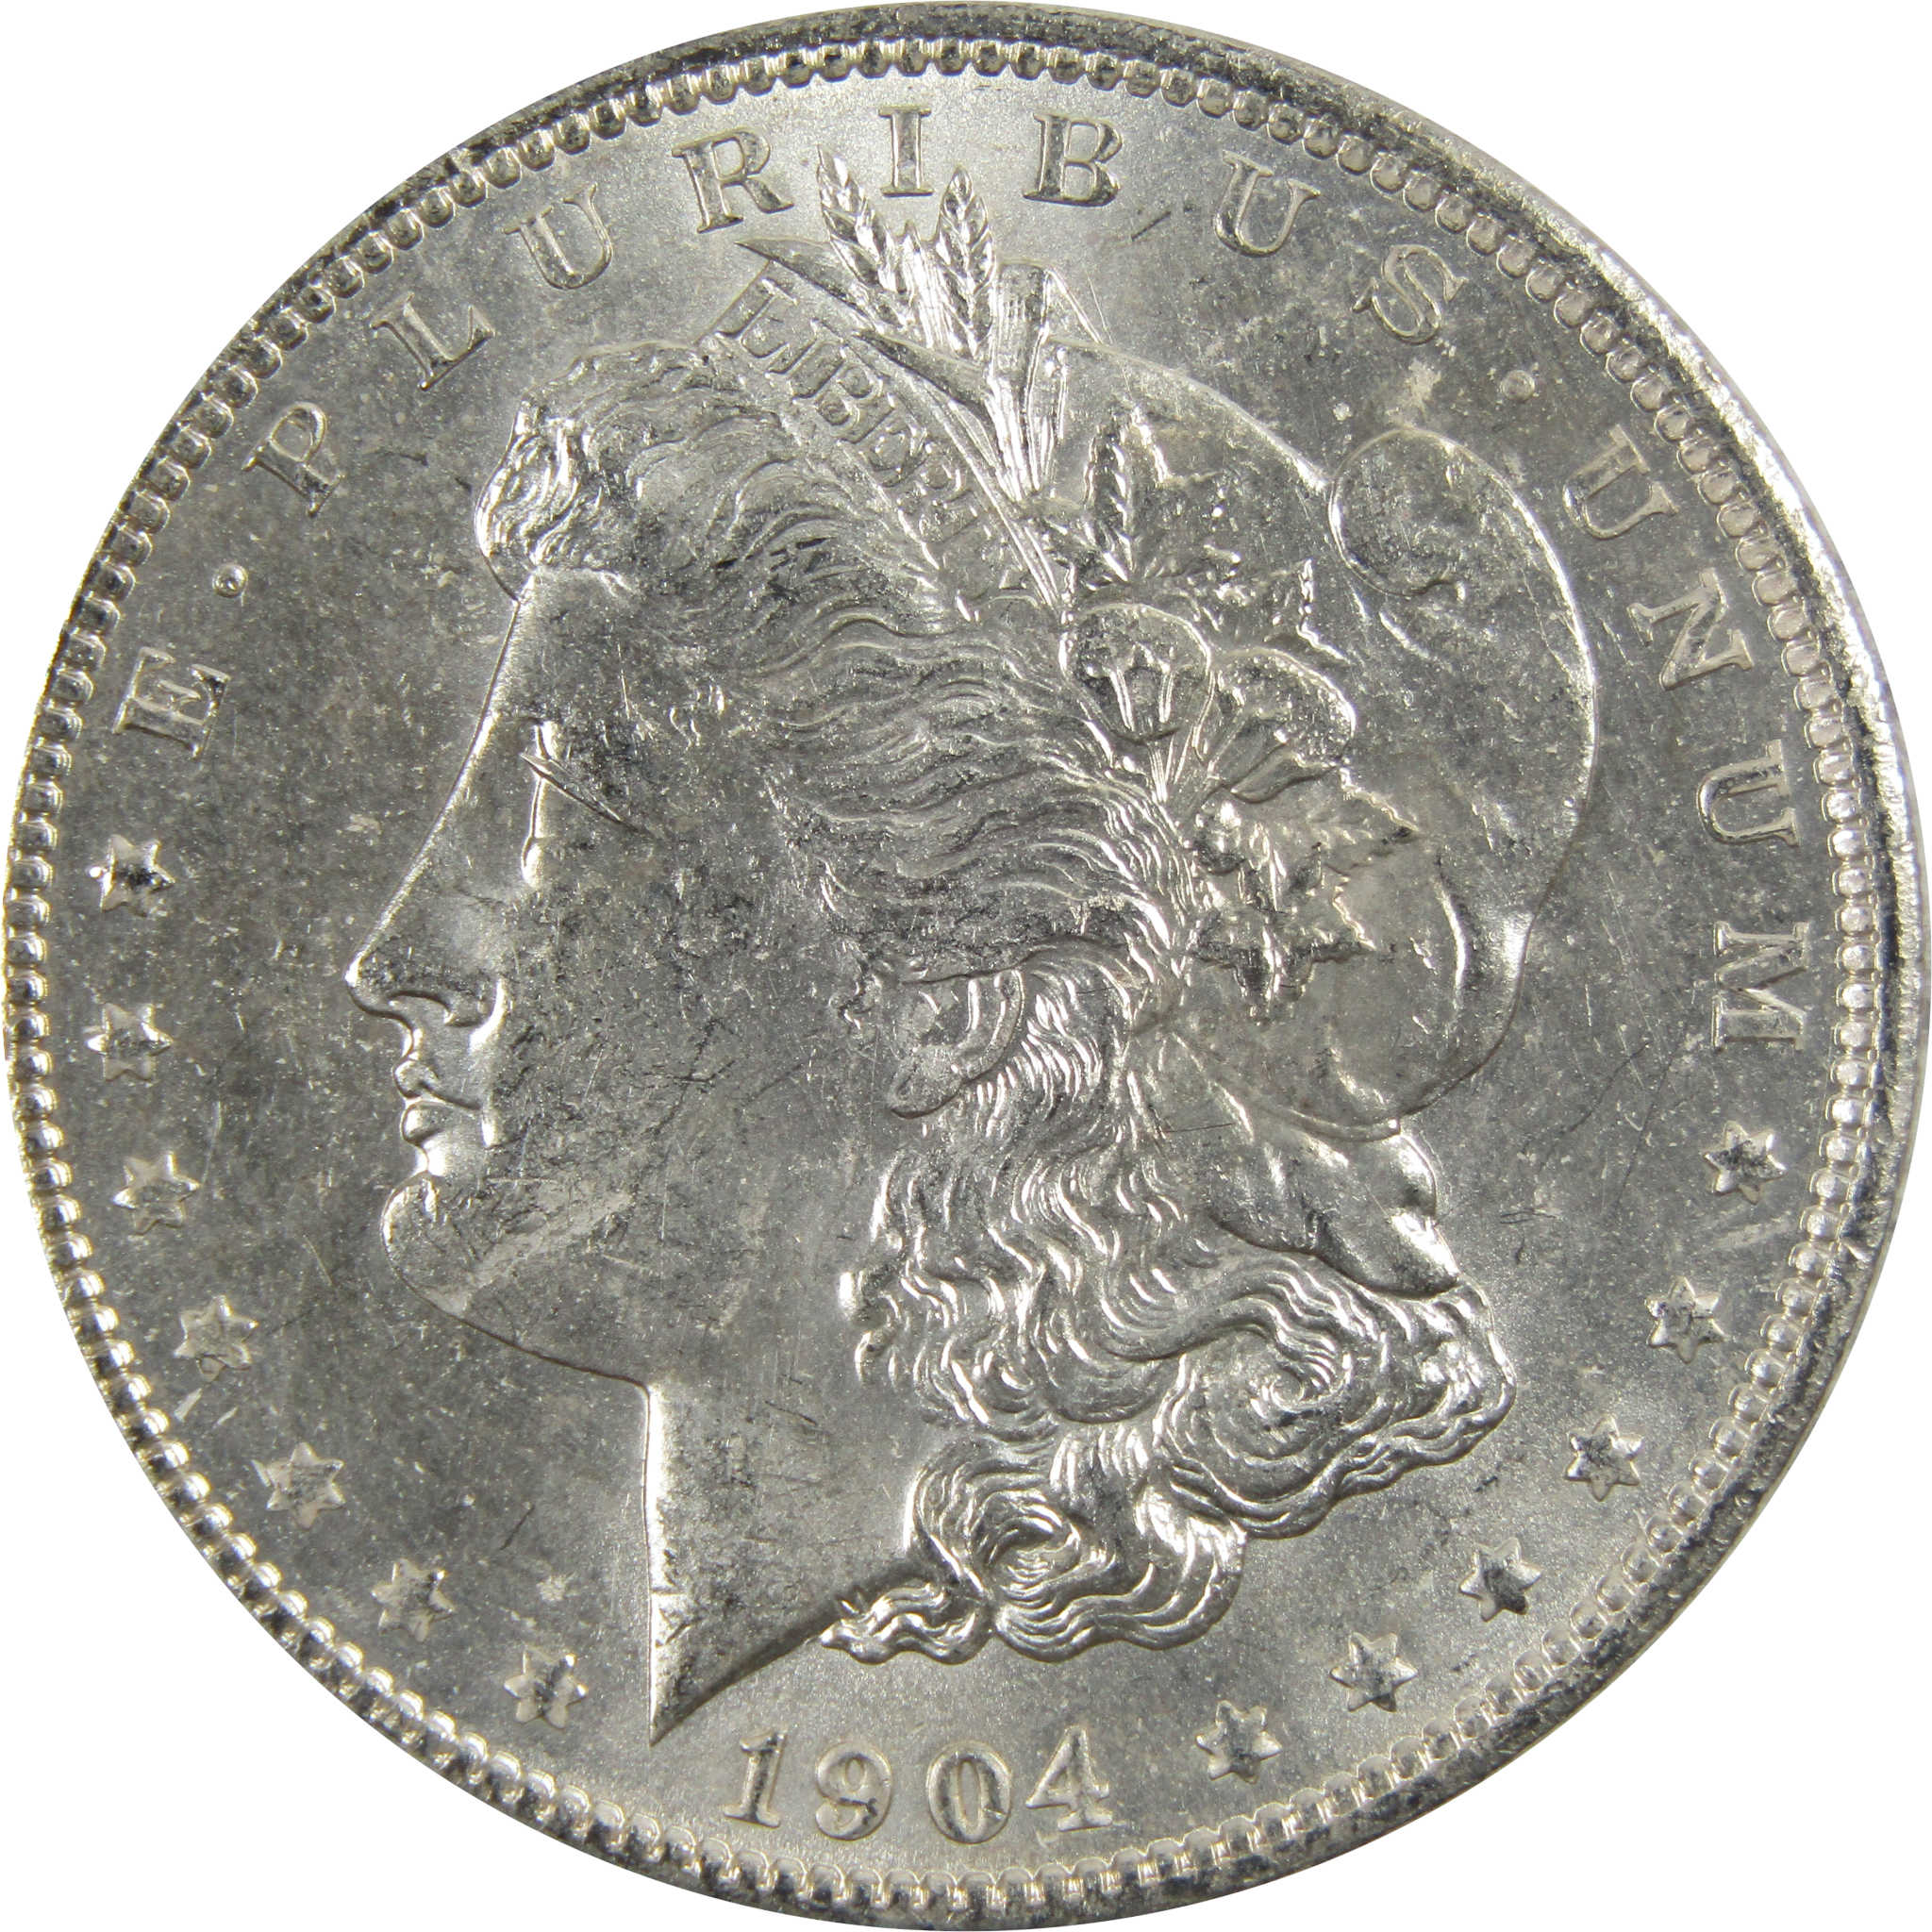 1904 O Morgan Dollar BU Uncirculated 90% Silver $1 Coin SKU:I5279 - Morgan coin - Morgan silver dollar - Morgan silver dollar for sale - Profile Coins &amp; Collectibles